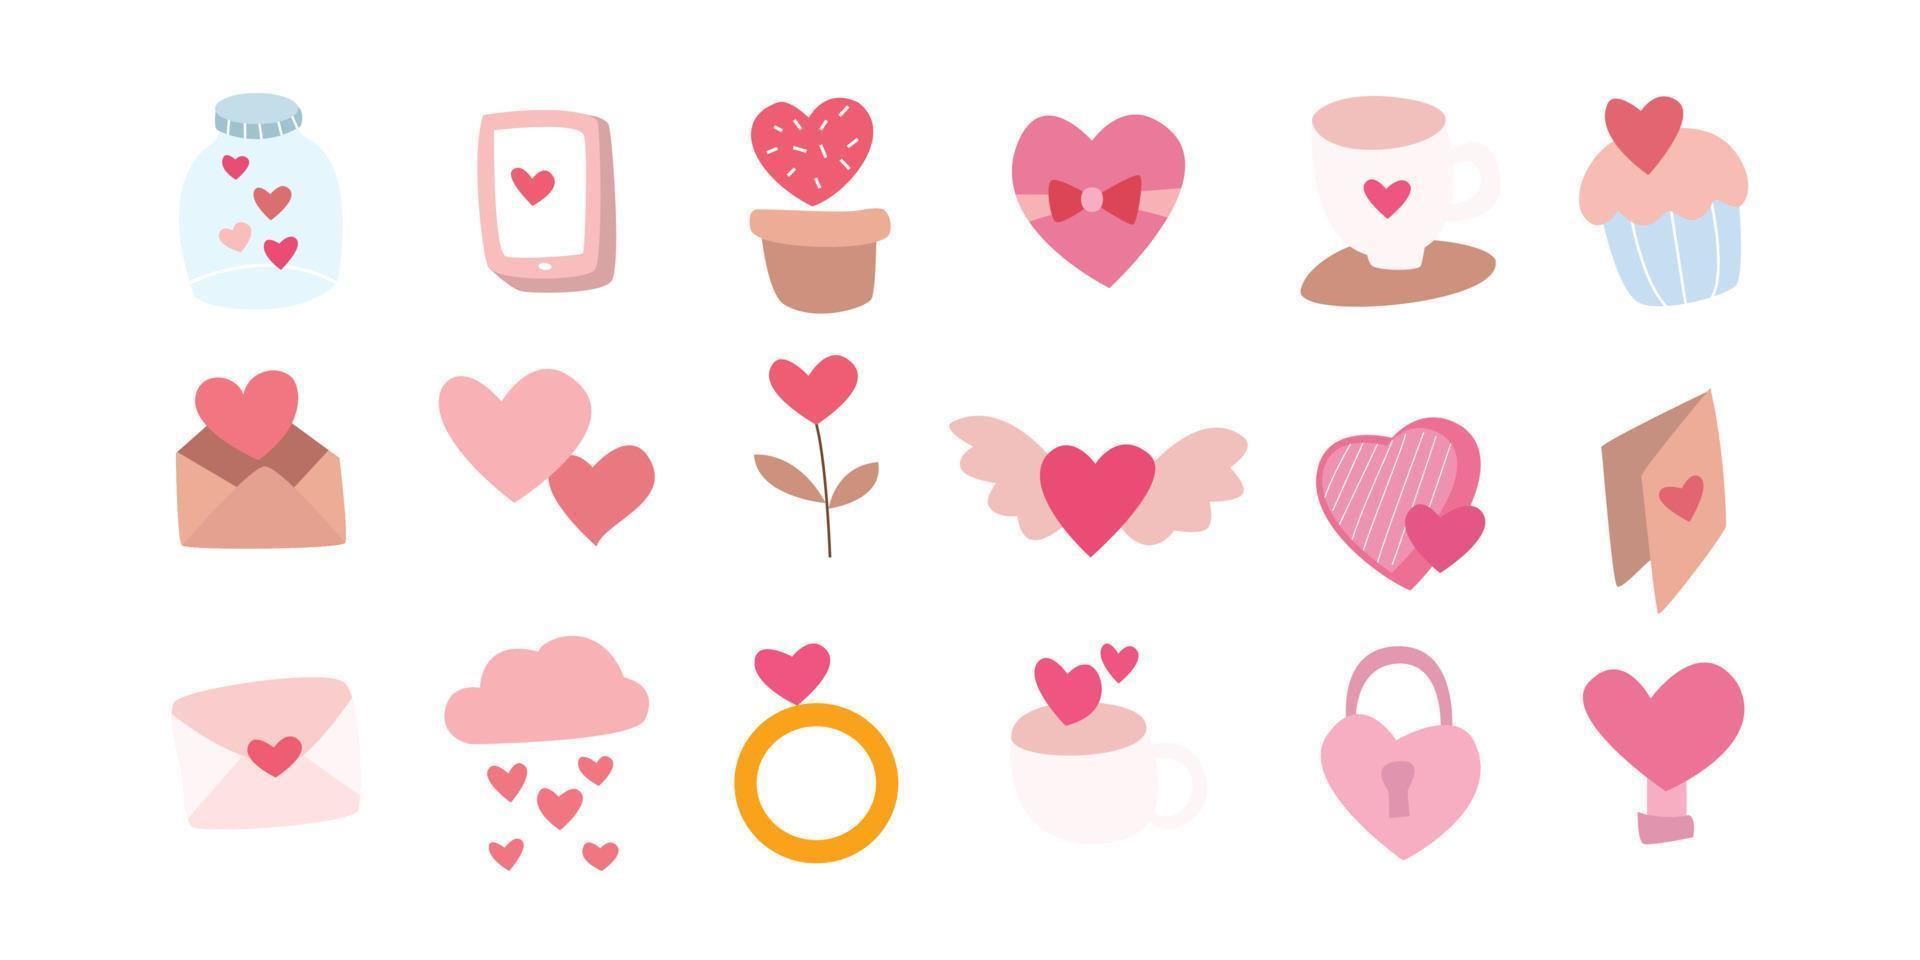 Valentinssymbol mit niedlichem Design. romantische illustrationen handgezeichnet in rosa. vektor